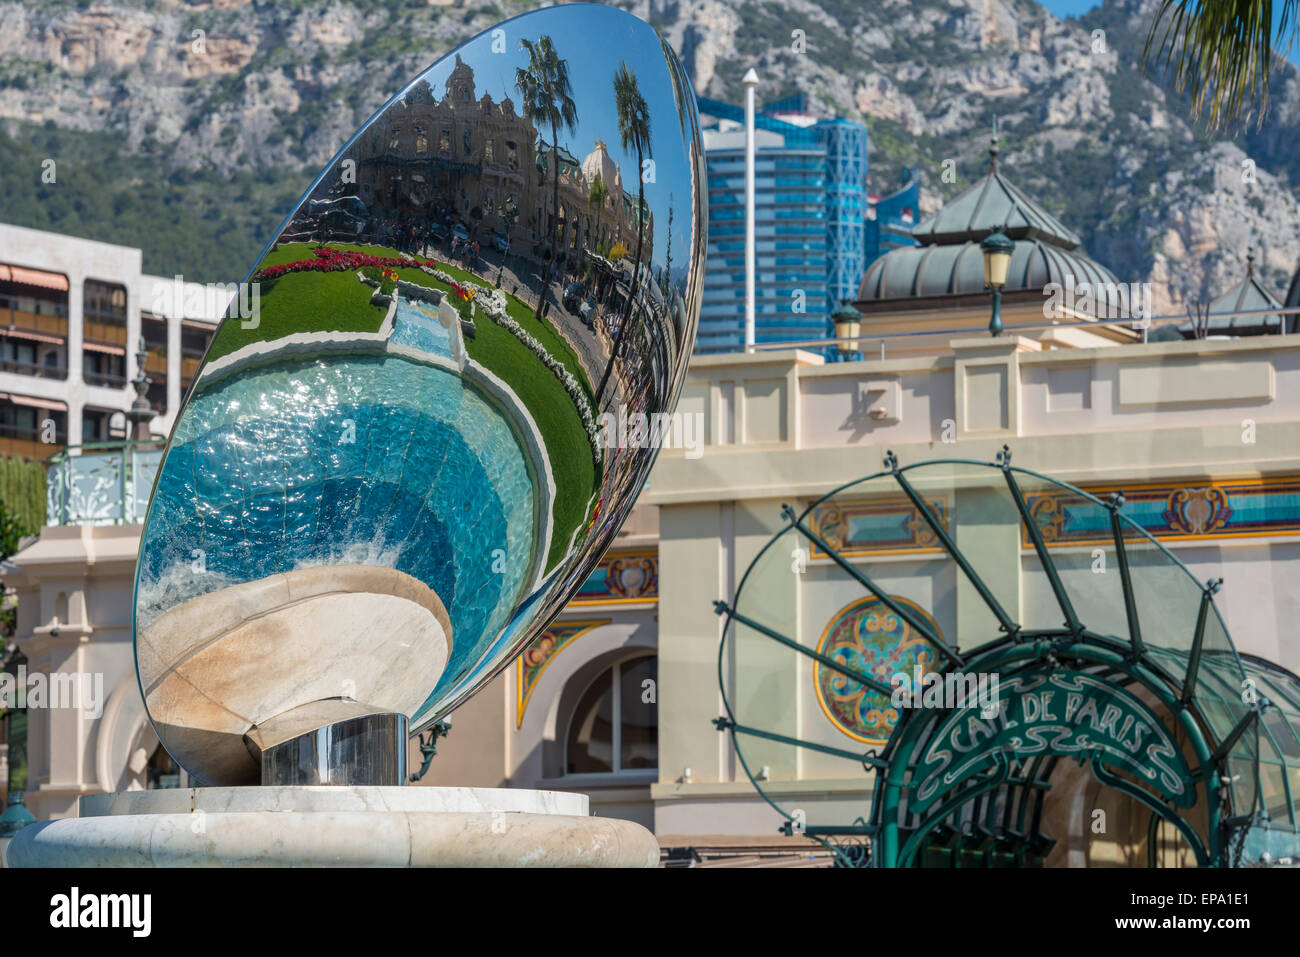 Une réflexion du casino dans une sculpture de métal et le Cafe de Paris entrée dans l'arrière-plan à Monte Carlo, Monaco Banque D'Images